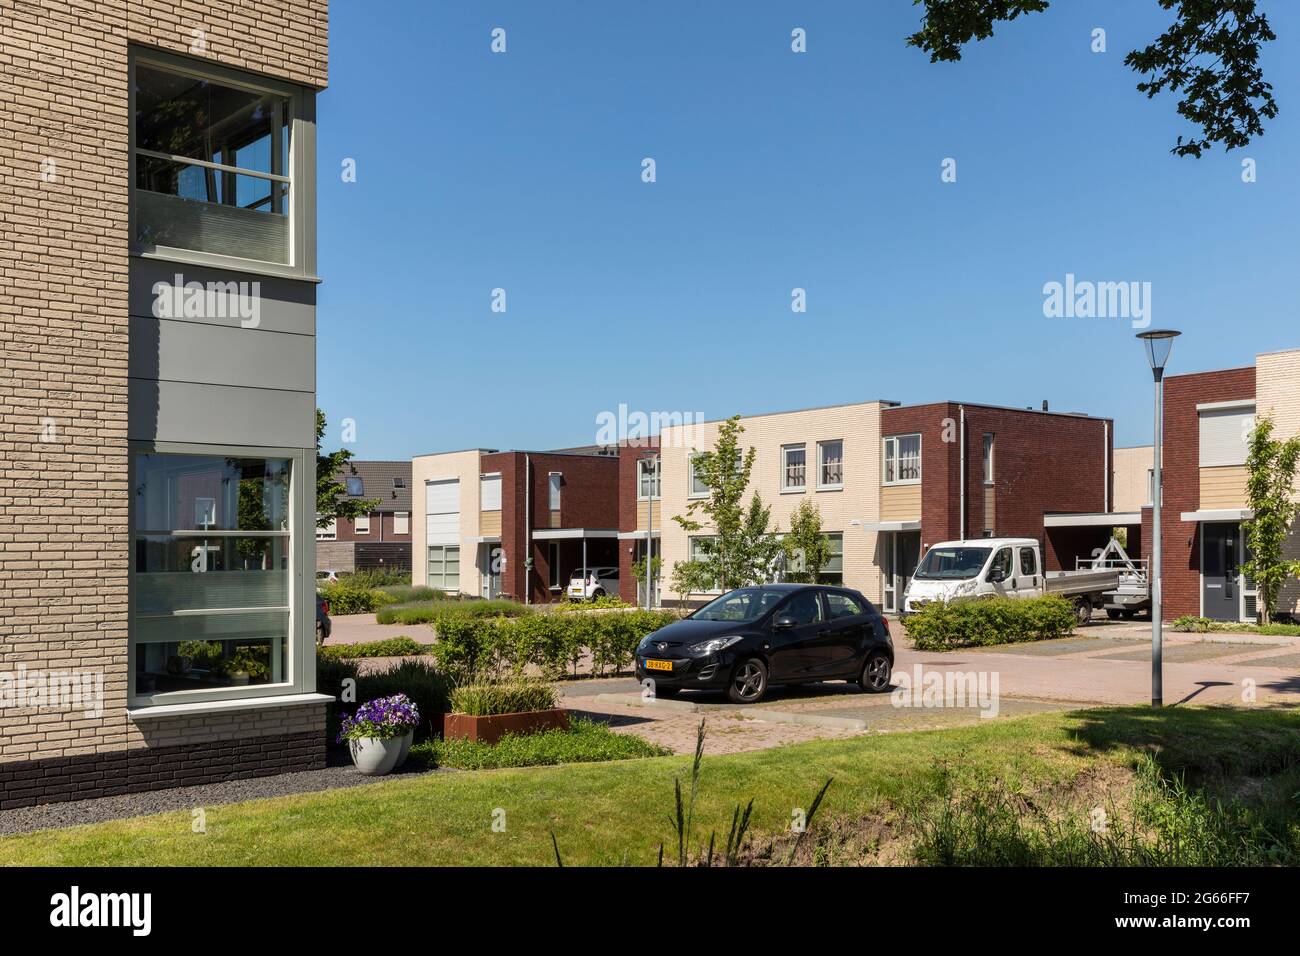 Eersel, Niederlande 13. Juni 2021. Neu gebaute Häuser mit Garten, Grün, geparkten Autos an einem sonnigen Tag im Sommer und einem blauen Himmel Stockfoto